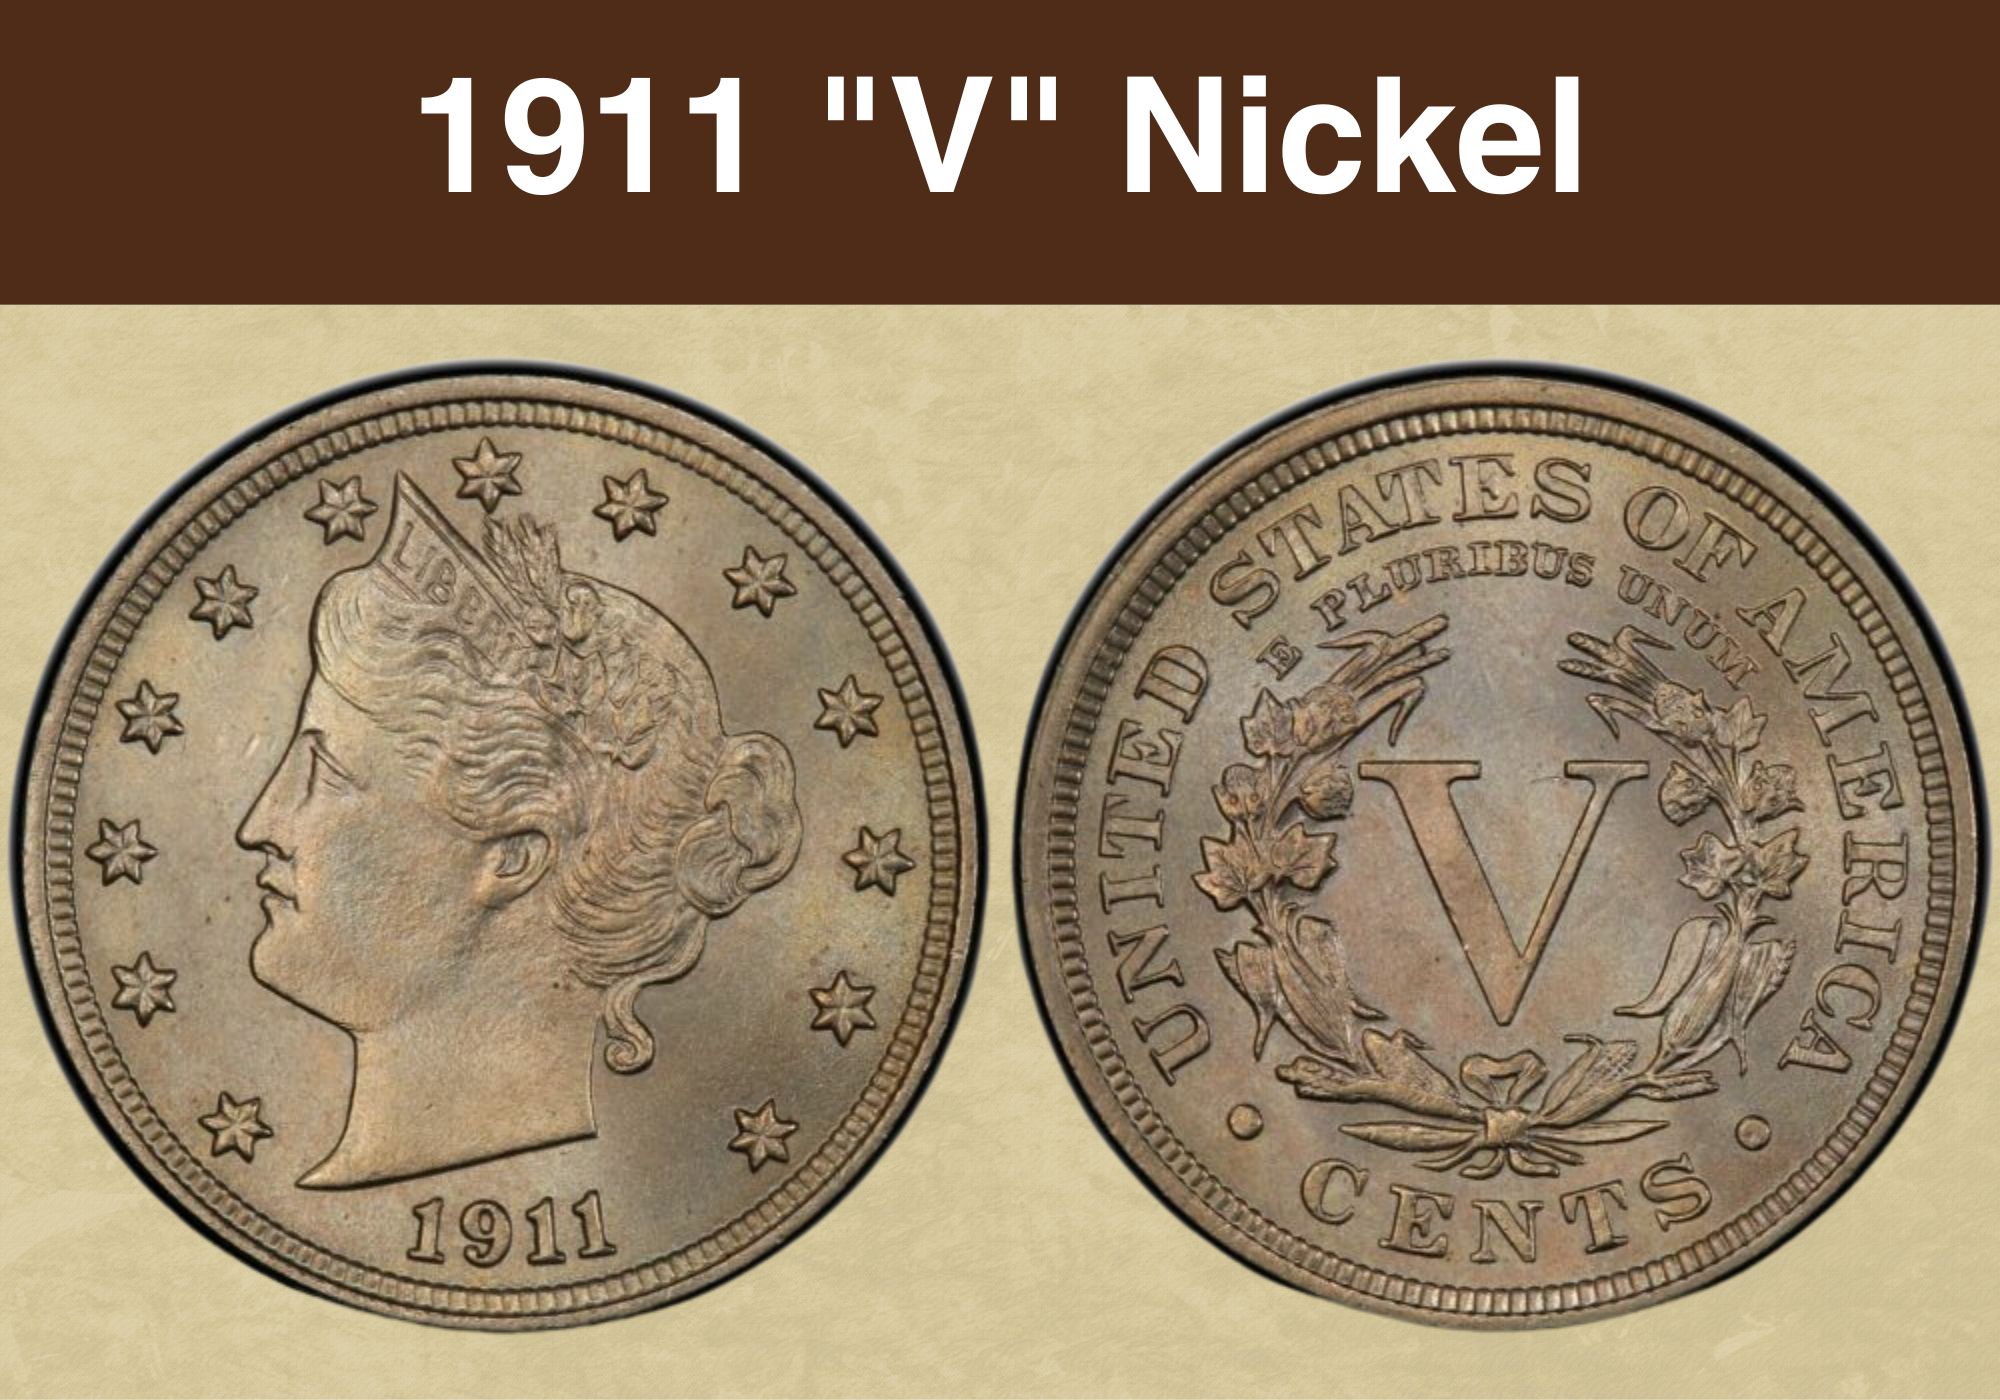 1911 V Nickel Value